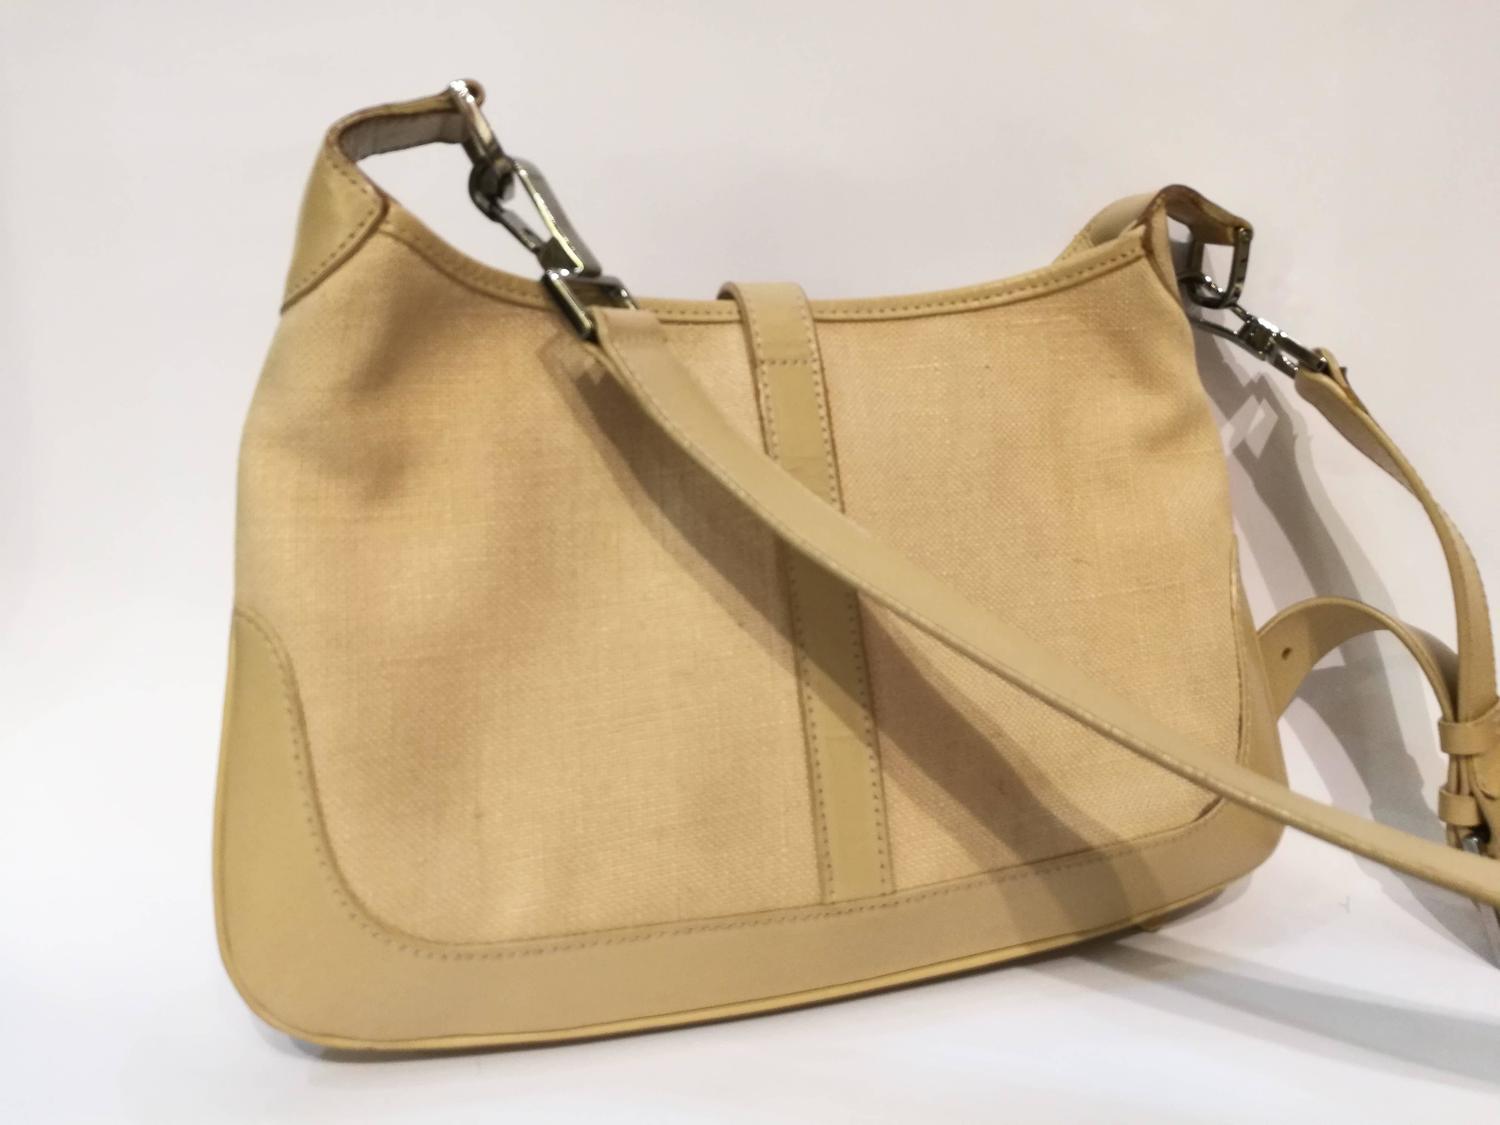 Gucci beije tone shoulder bag For Sale at 1stdibs